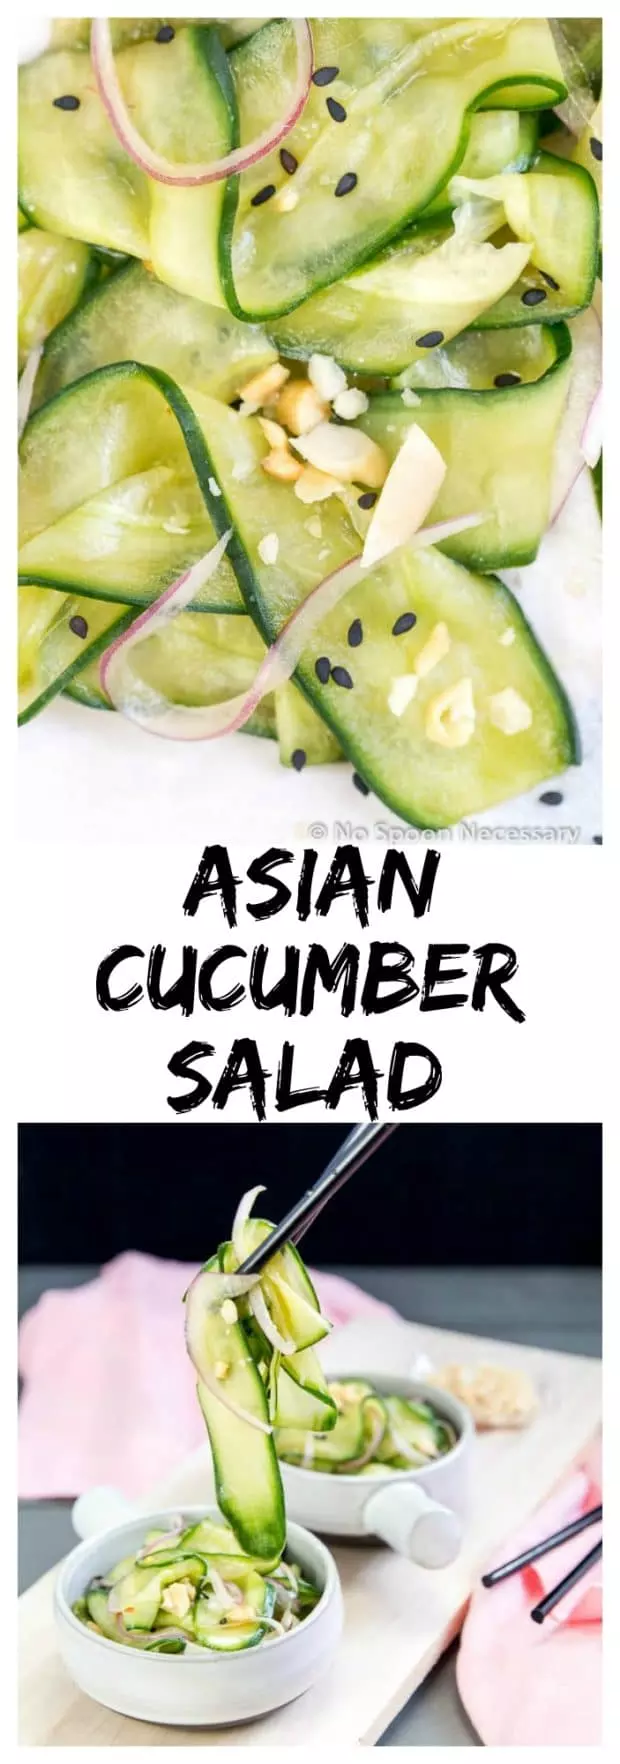 Asian Cucumber Salad long pin